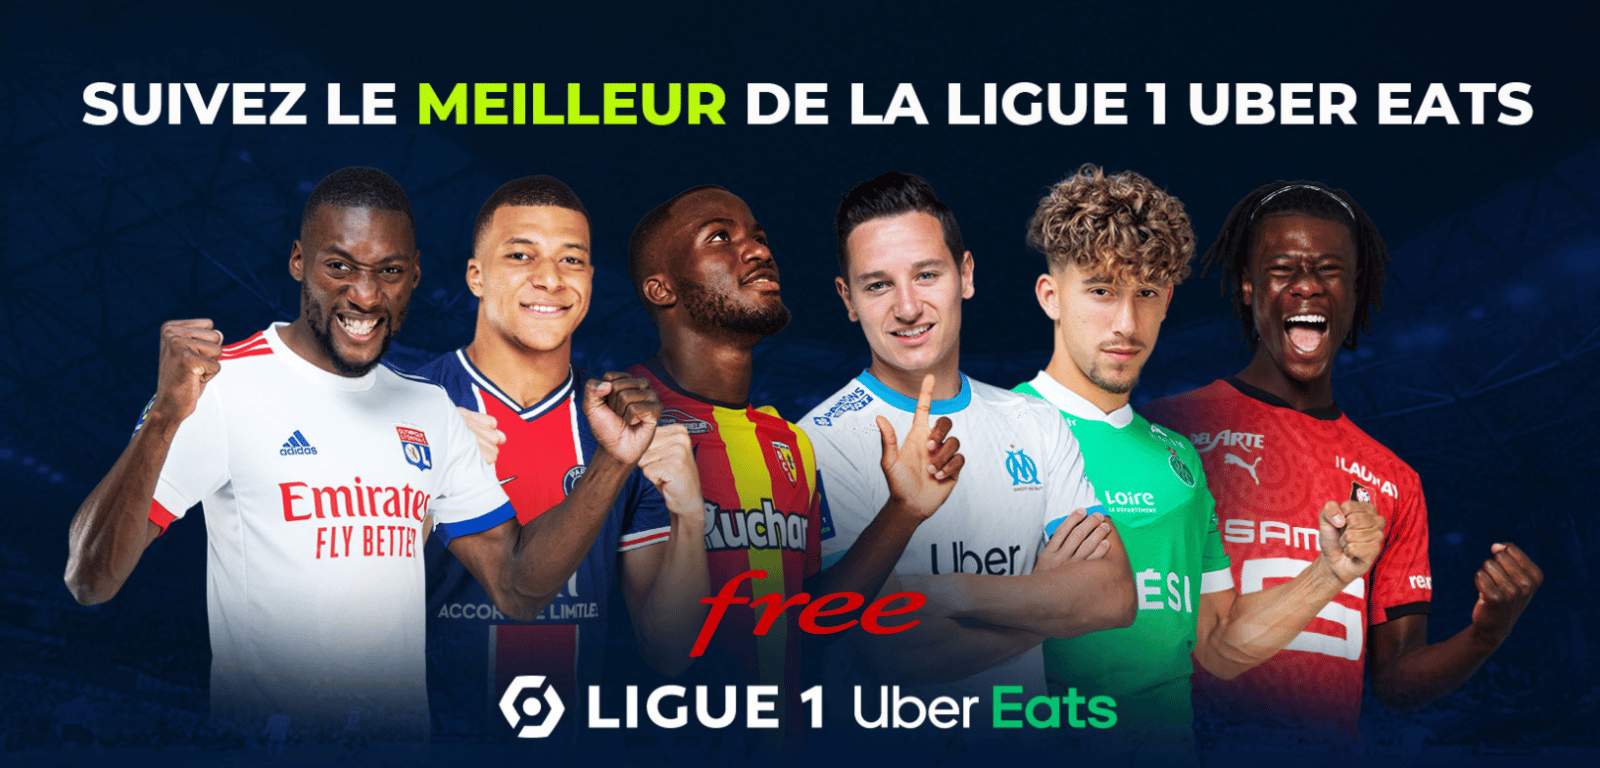 FOOT – Comment suivre la Ligue 1 Uber Eats gratuitement ? Applications